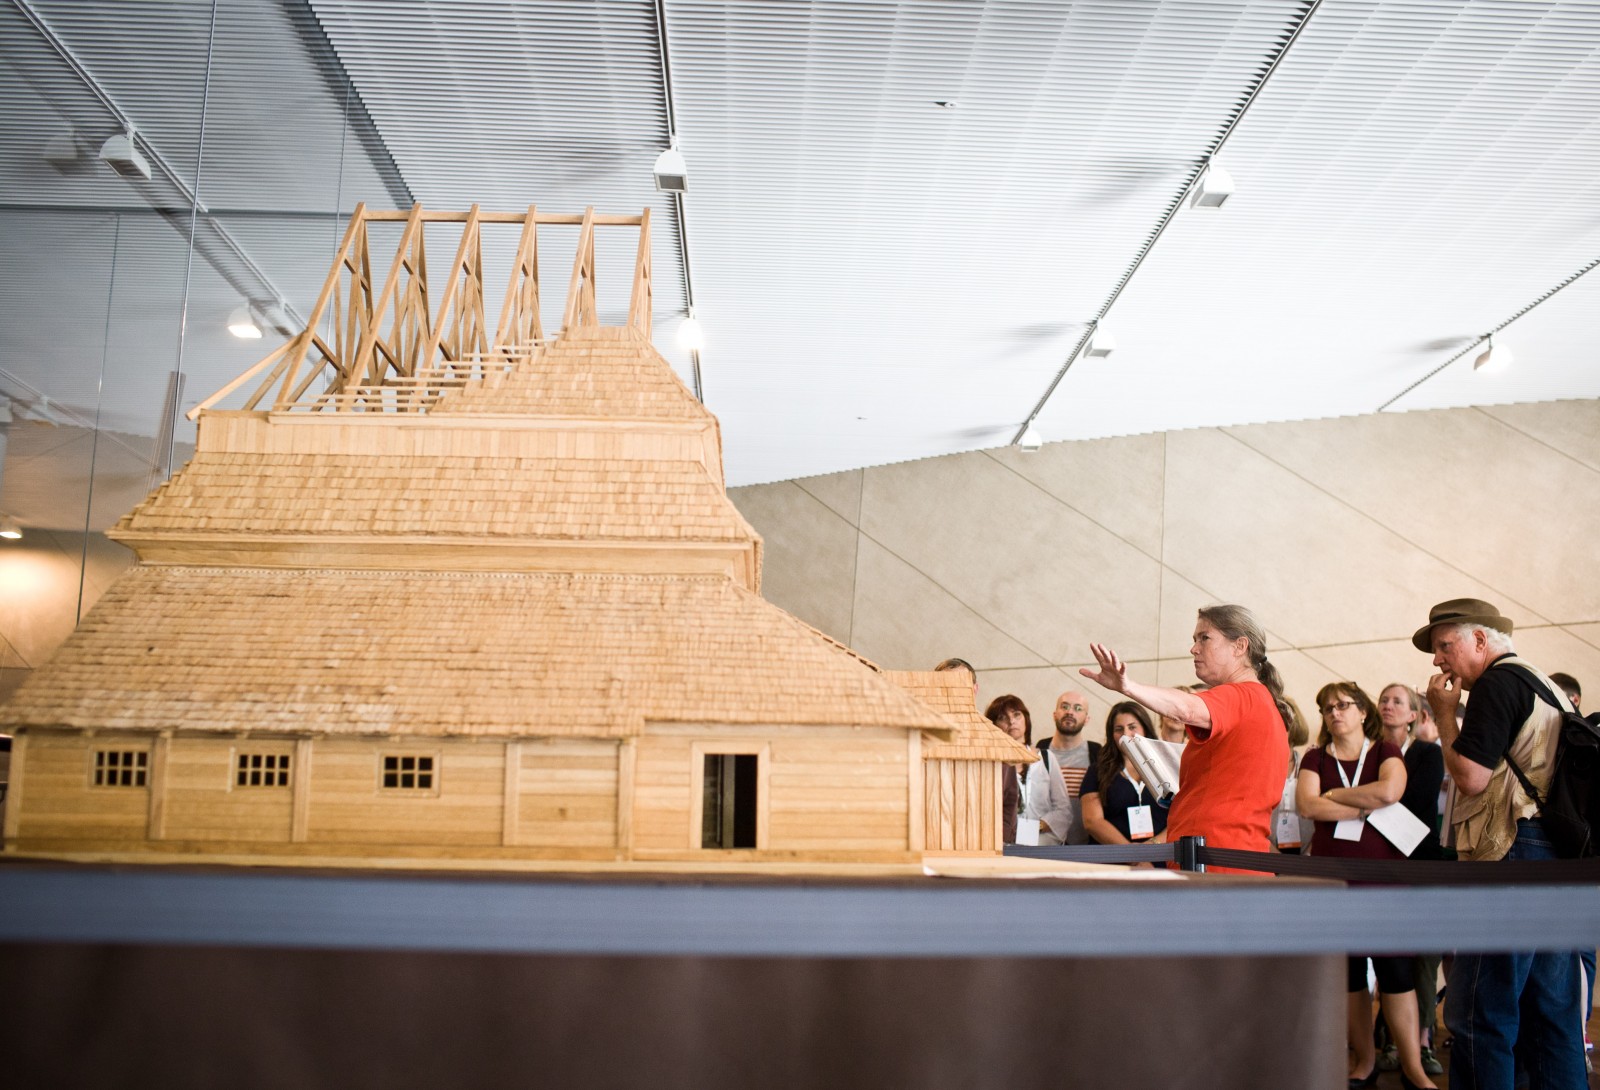 Przewodnik pokazuje grupie drewniany model synagogi.